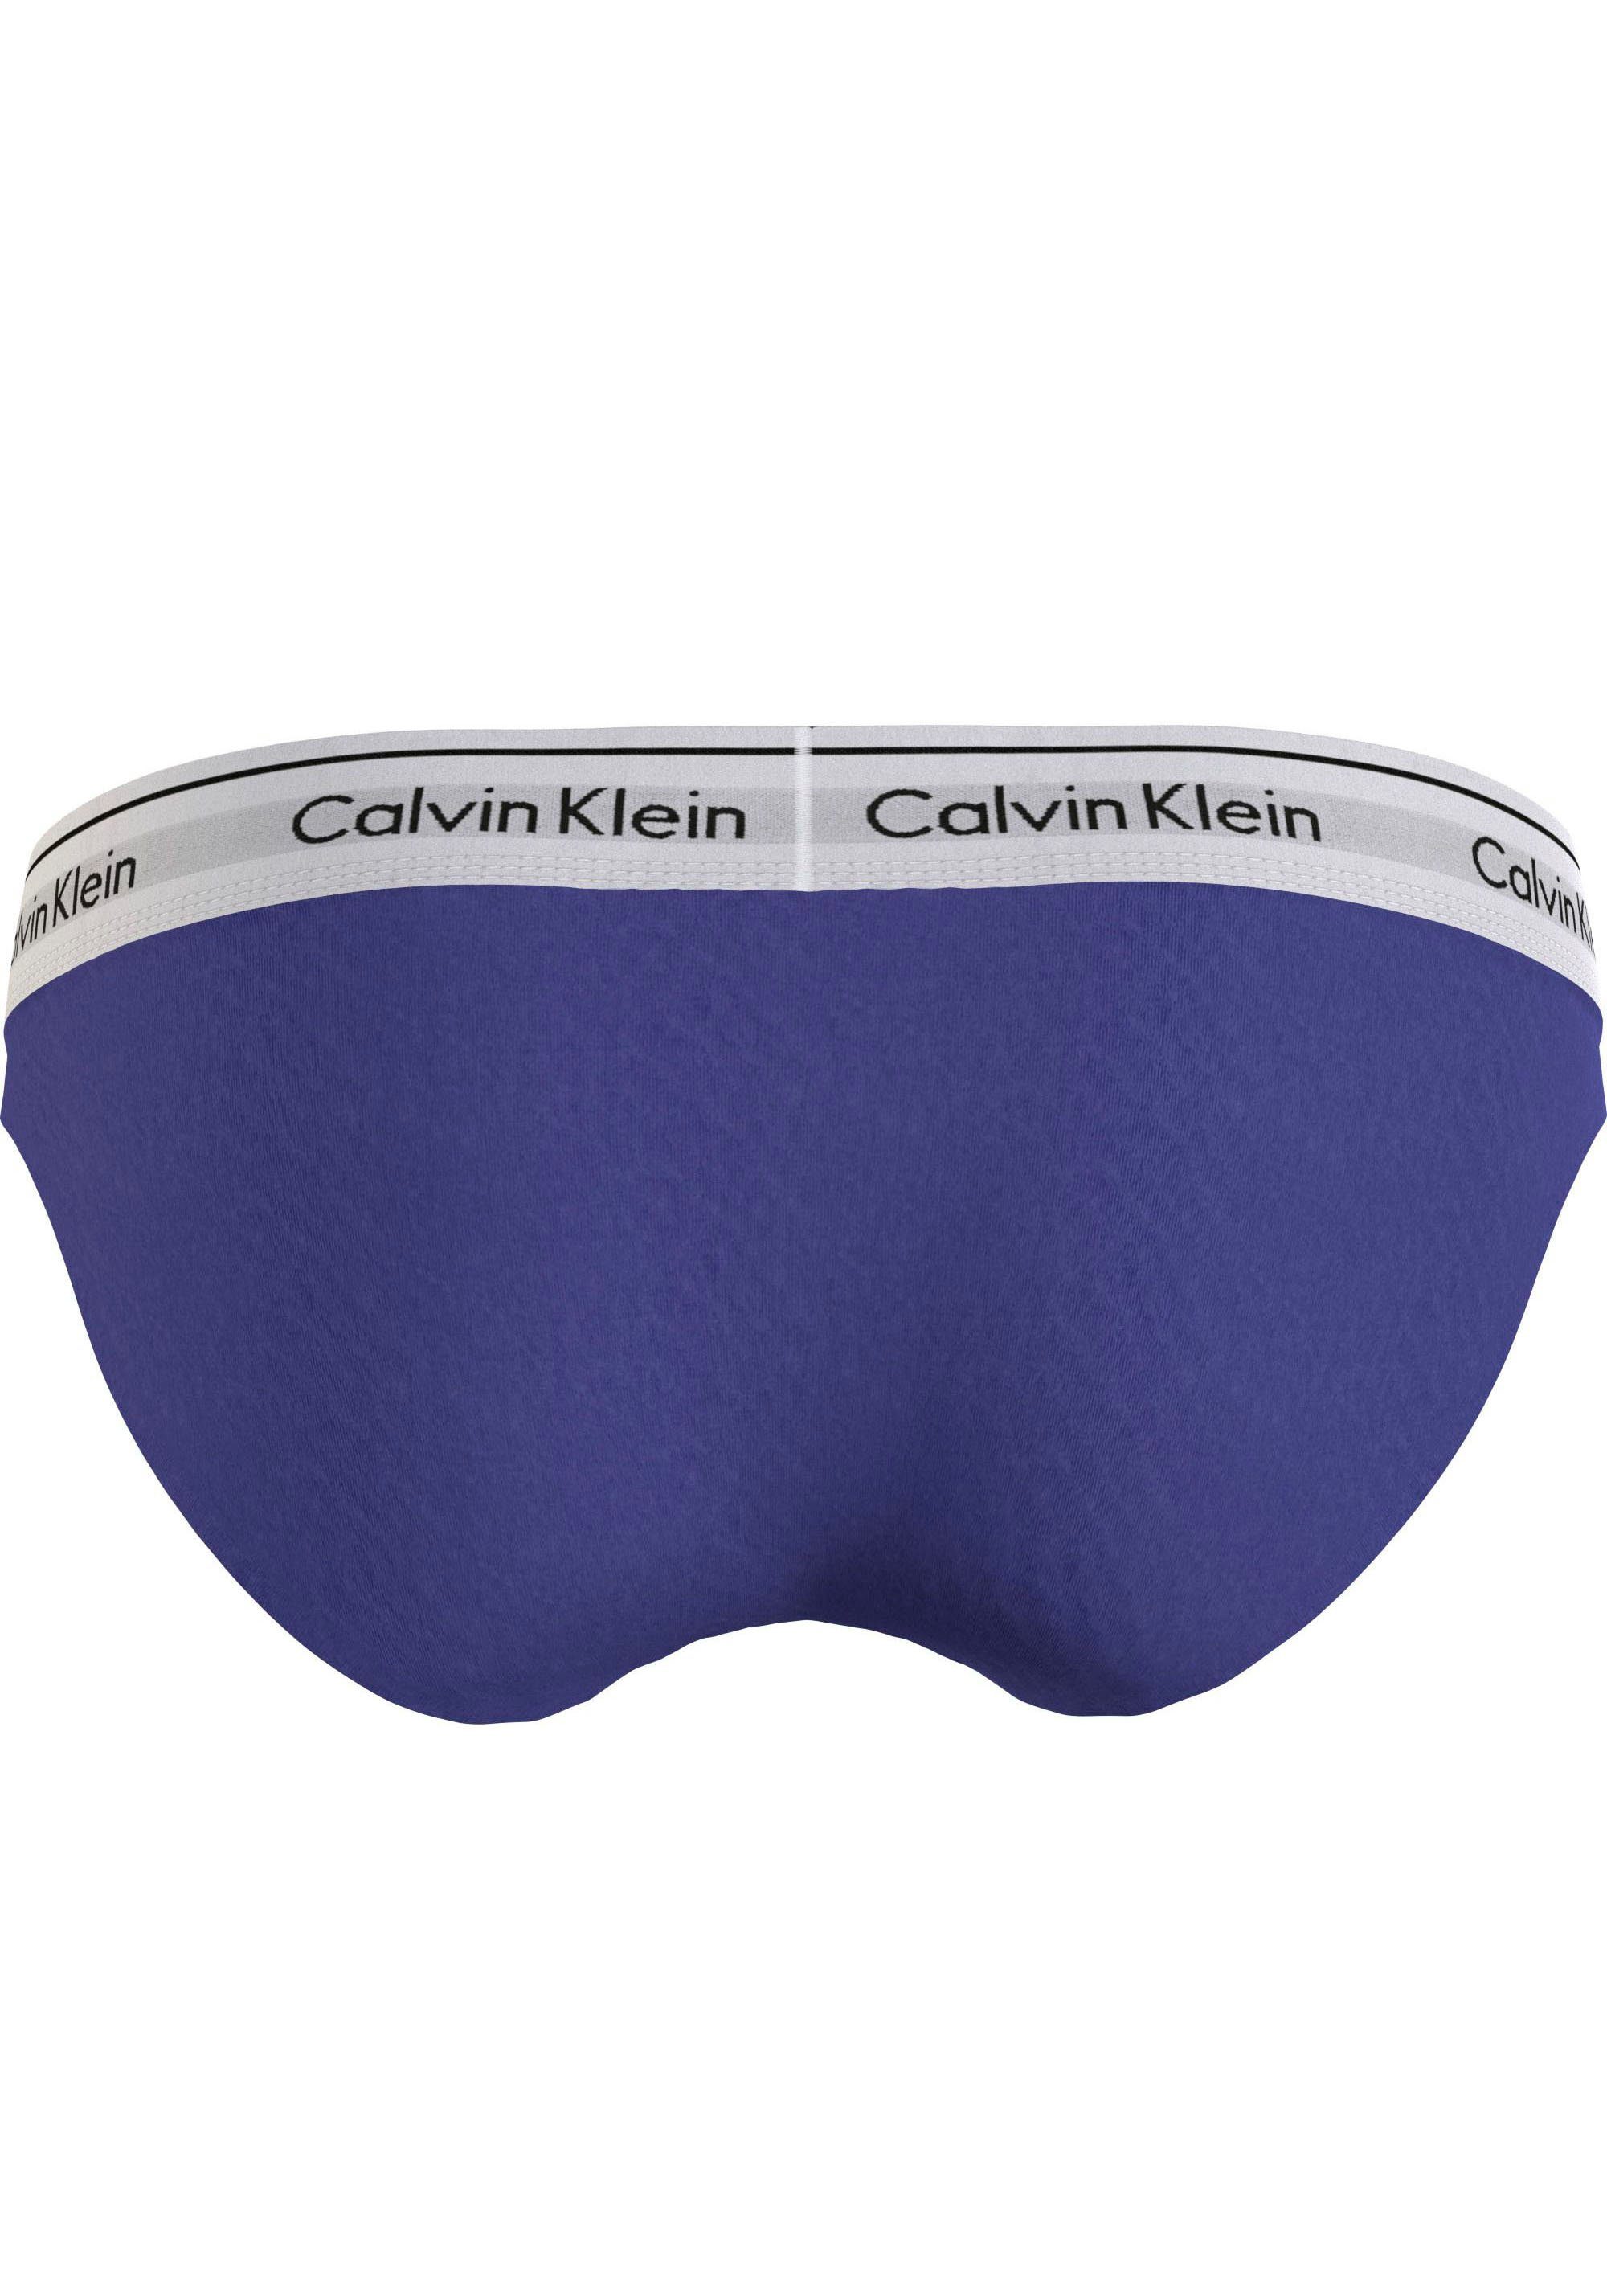 BIKINI klassischem Underwear Calvin Bikinislip Klein blau mit Logo